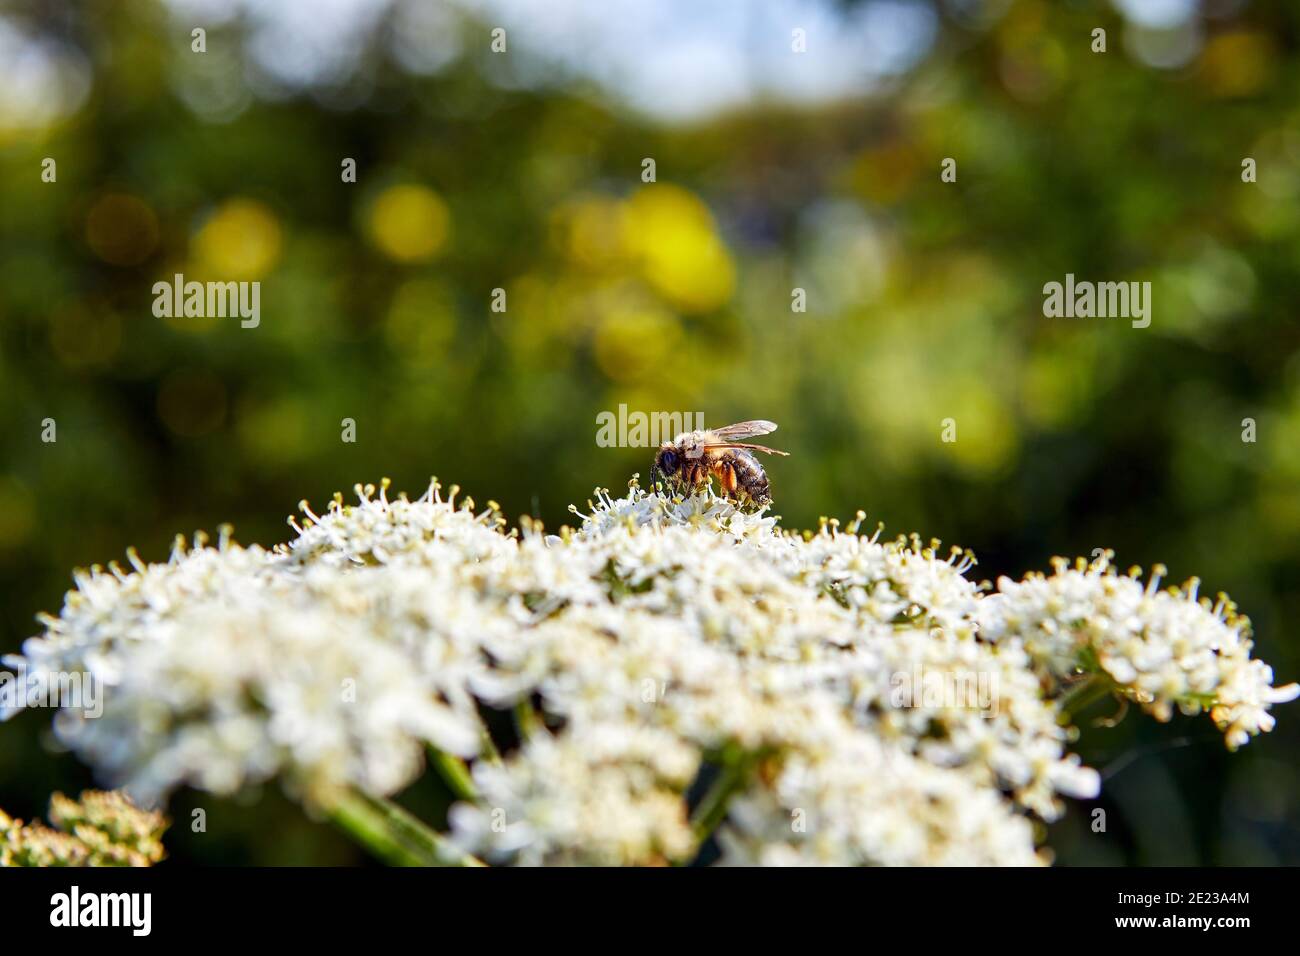 Immagine di fiori di prezzemolo di mucca in primavera con un'ape selvatica che raccoglie polline, profondità di campo poco profonda con sfondo verde e blu. Foto Stock